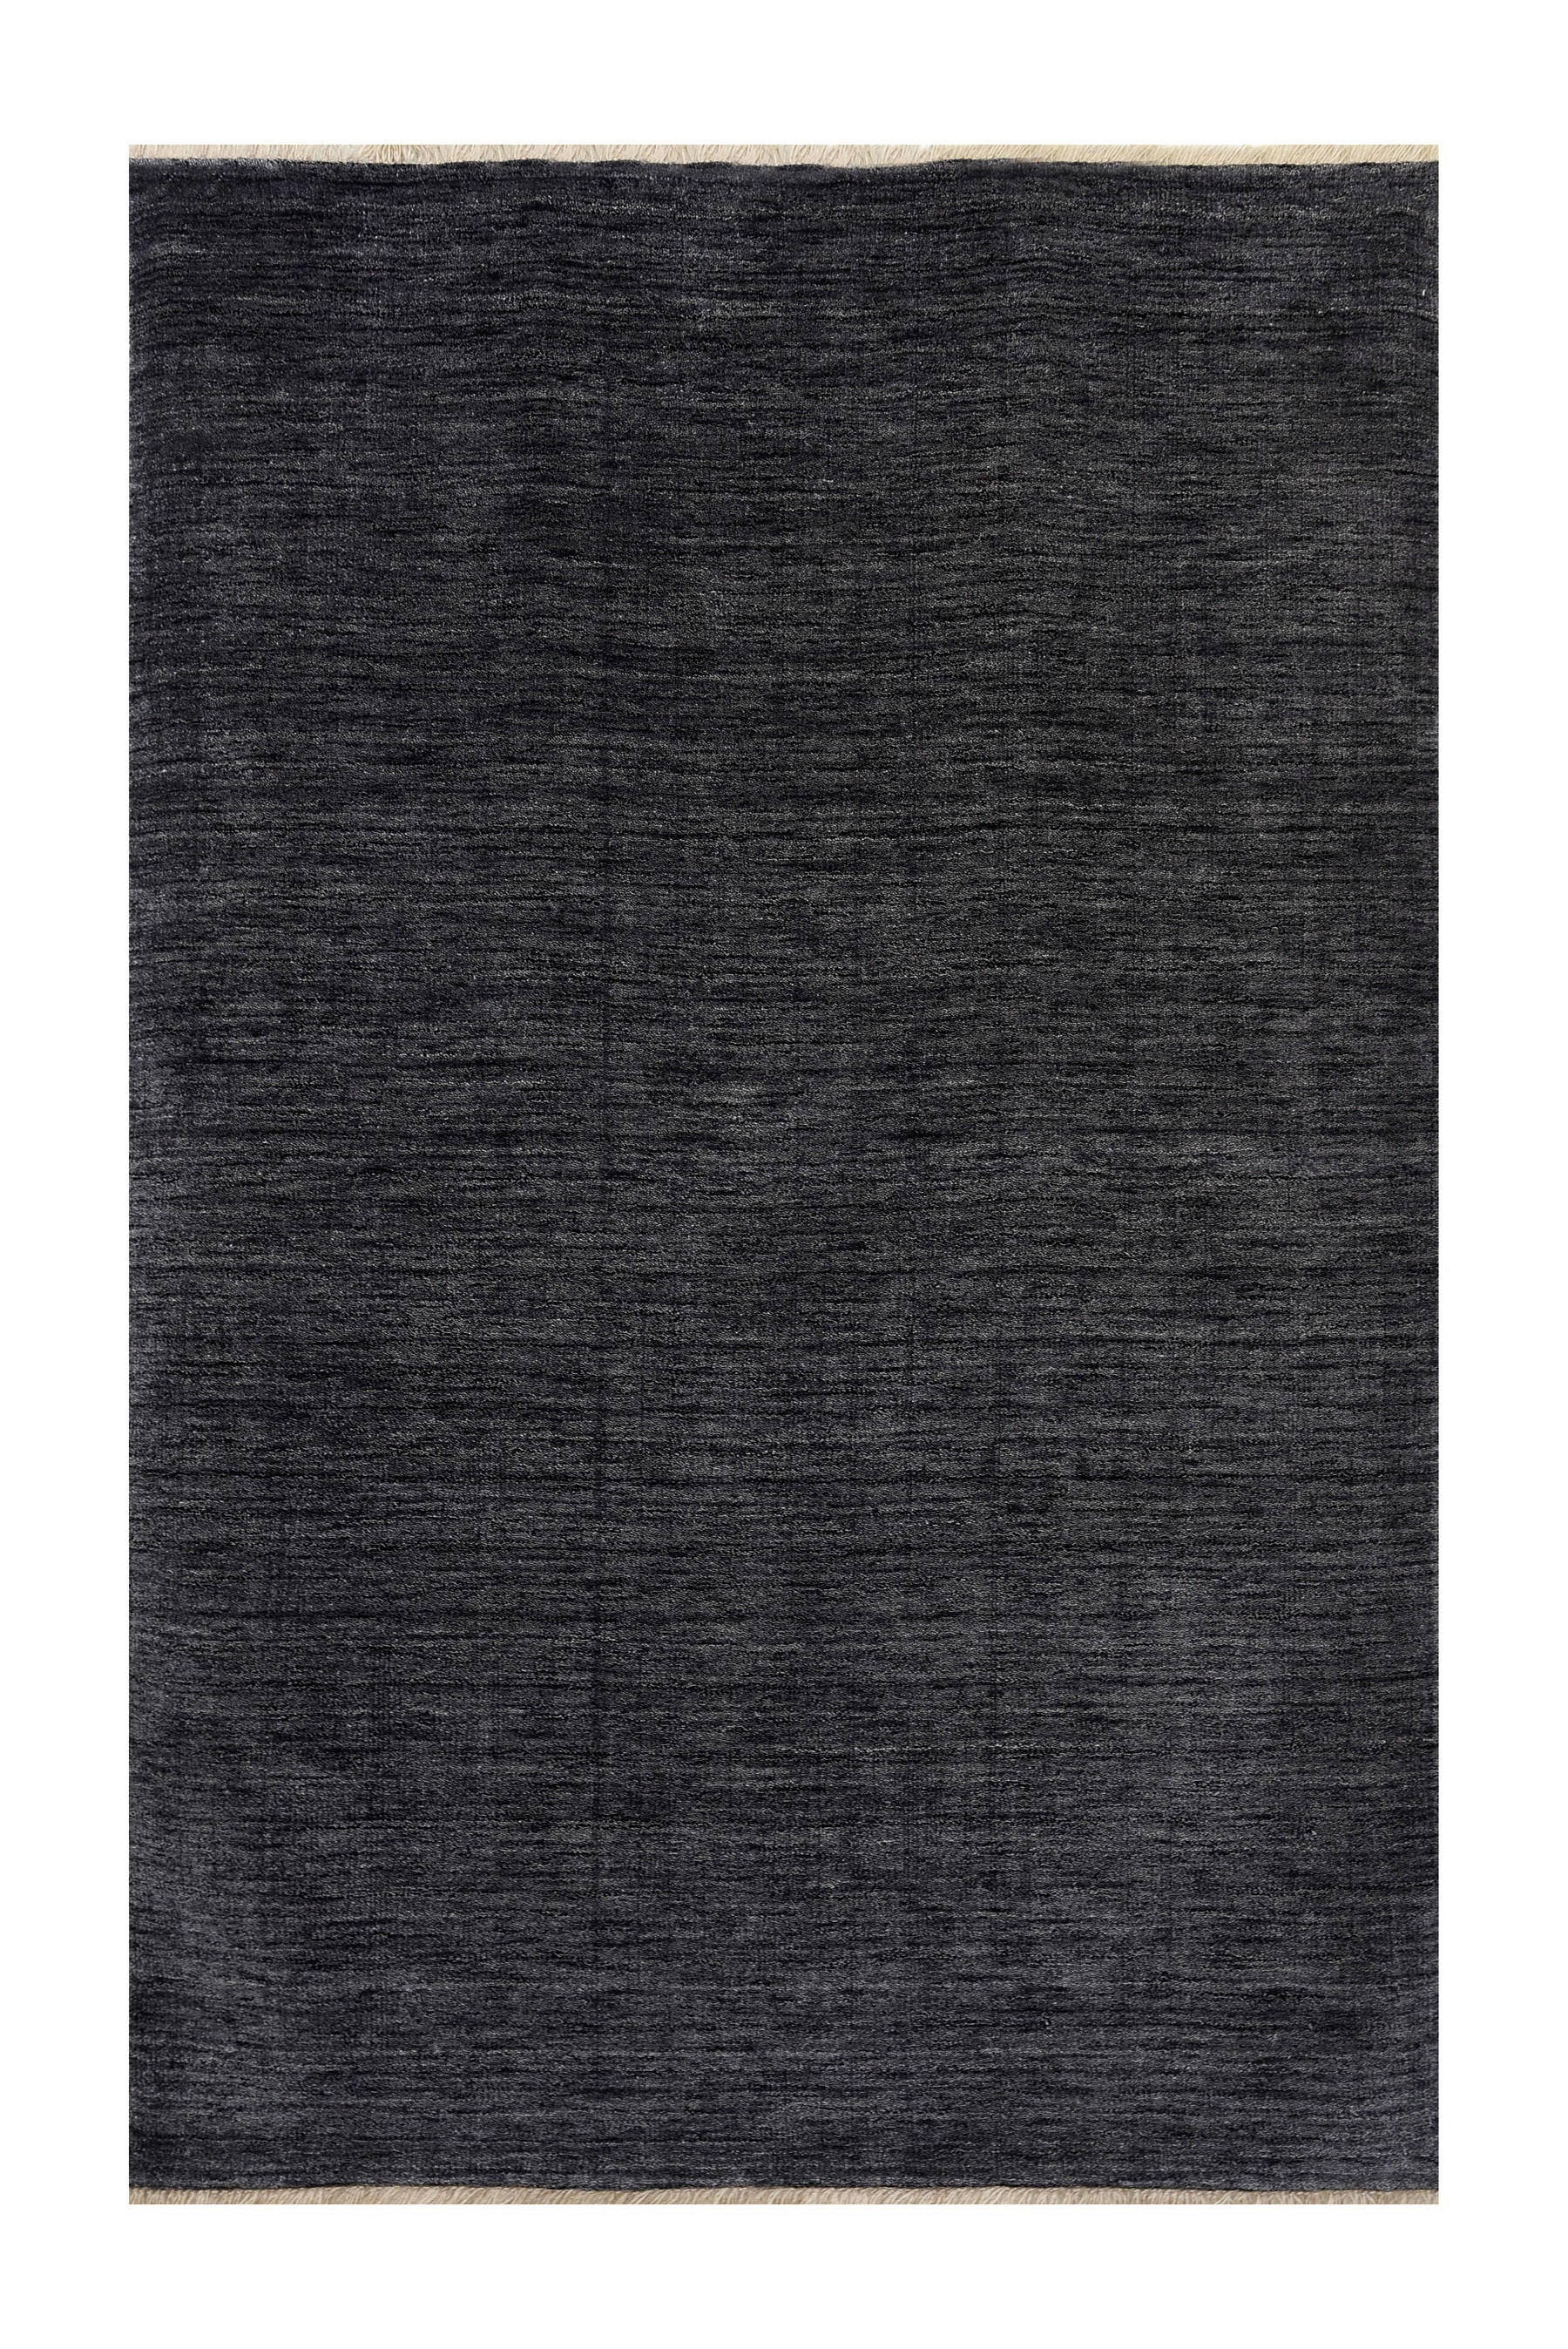 ORIENTTEPPICH Alkatif Nomad   - Grau, KONVENTIONELL, Textil (60/90cm) - Cazaris